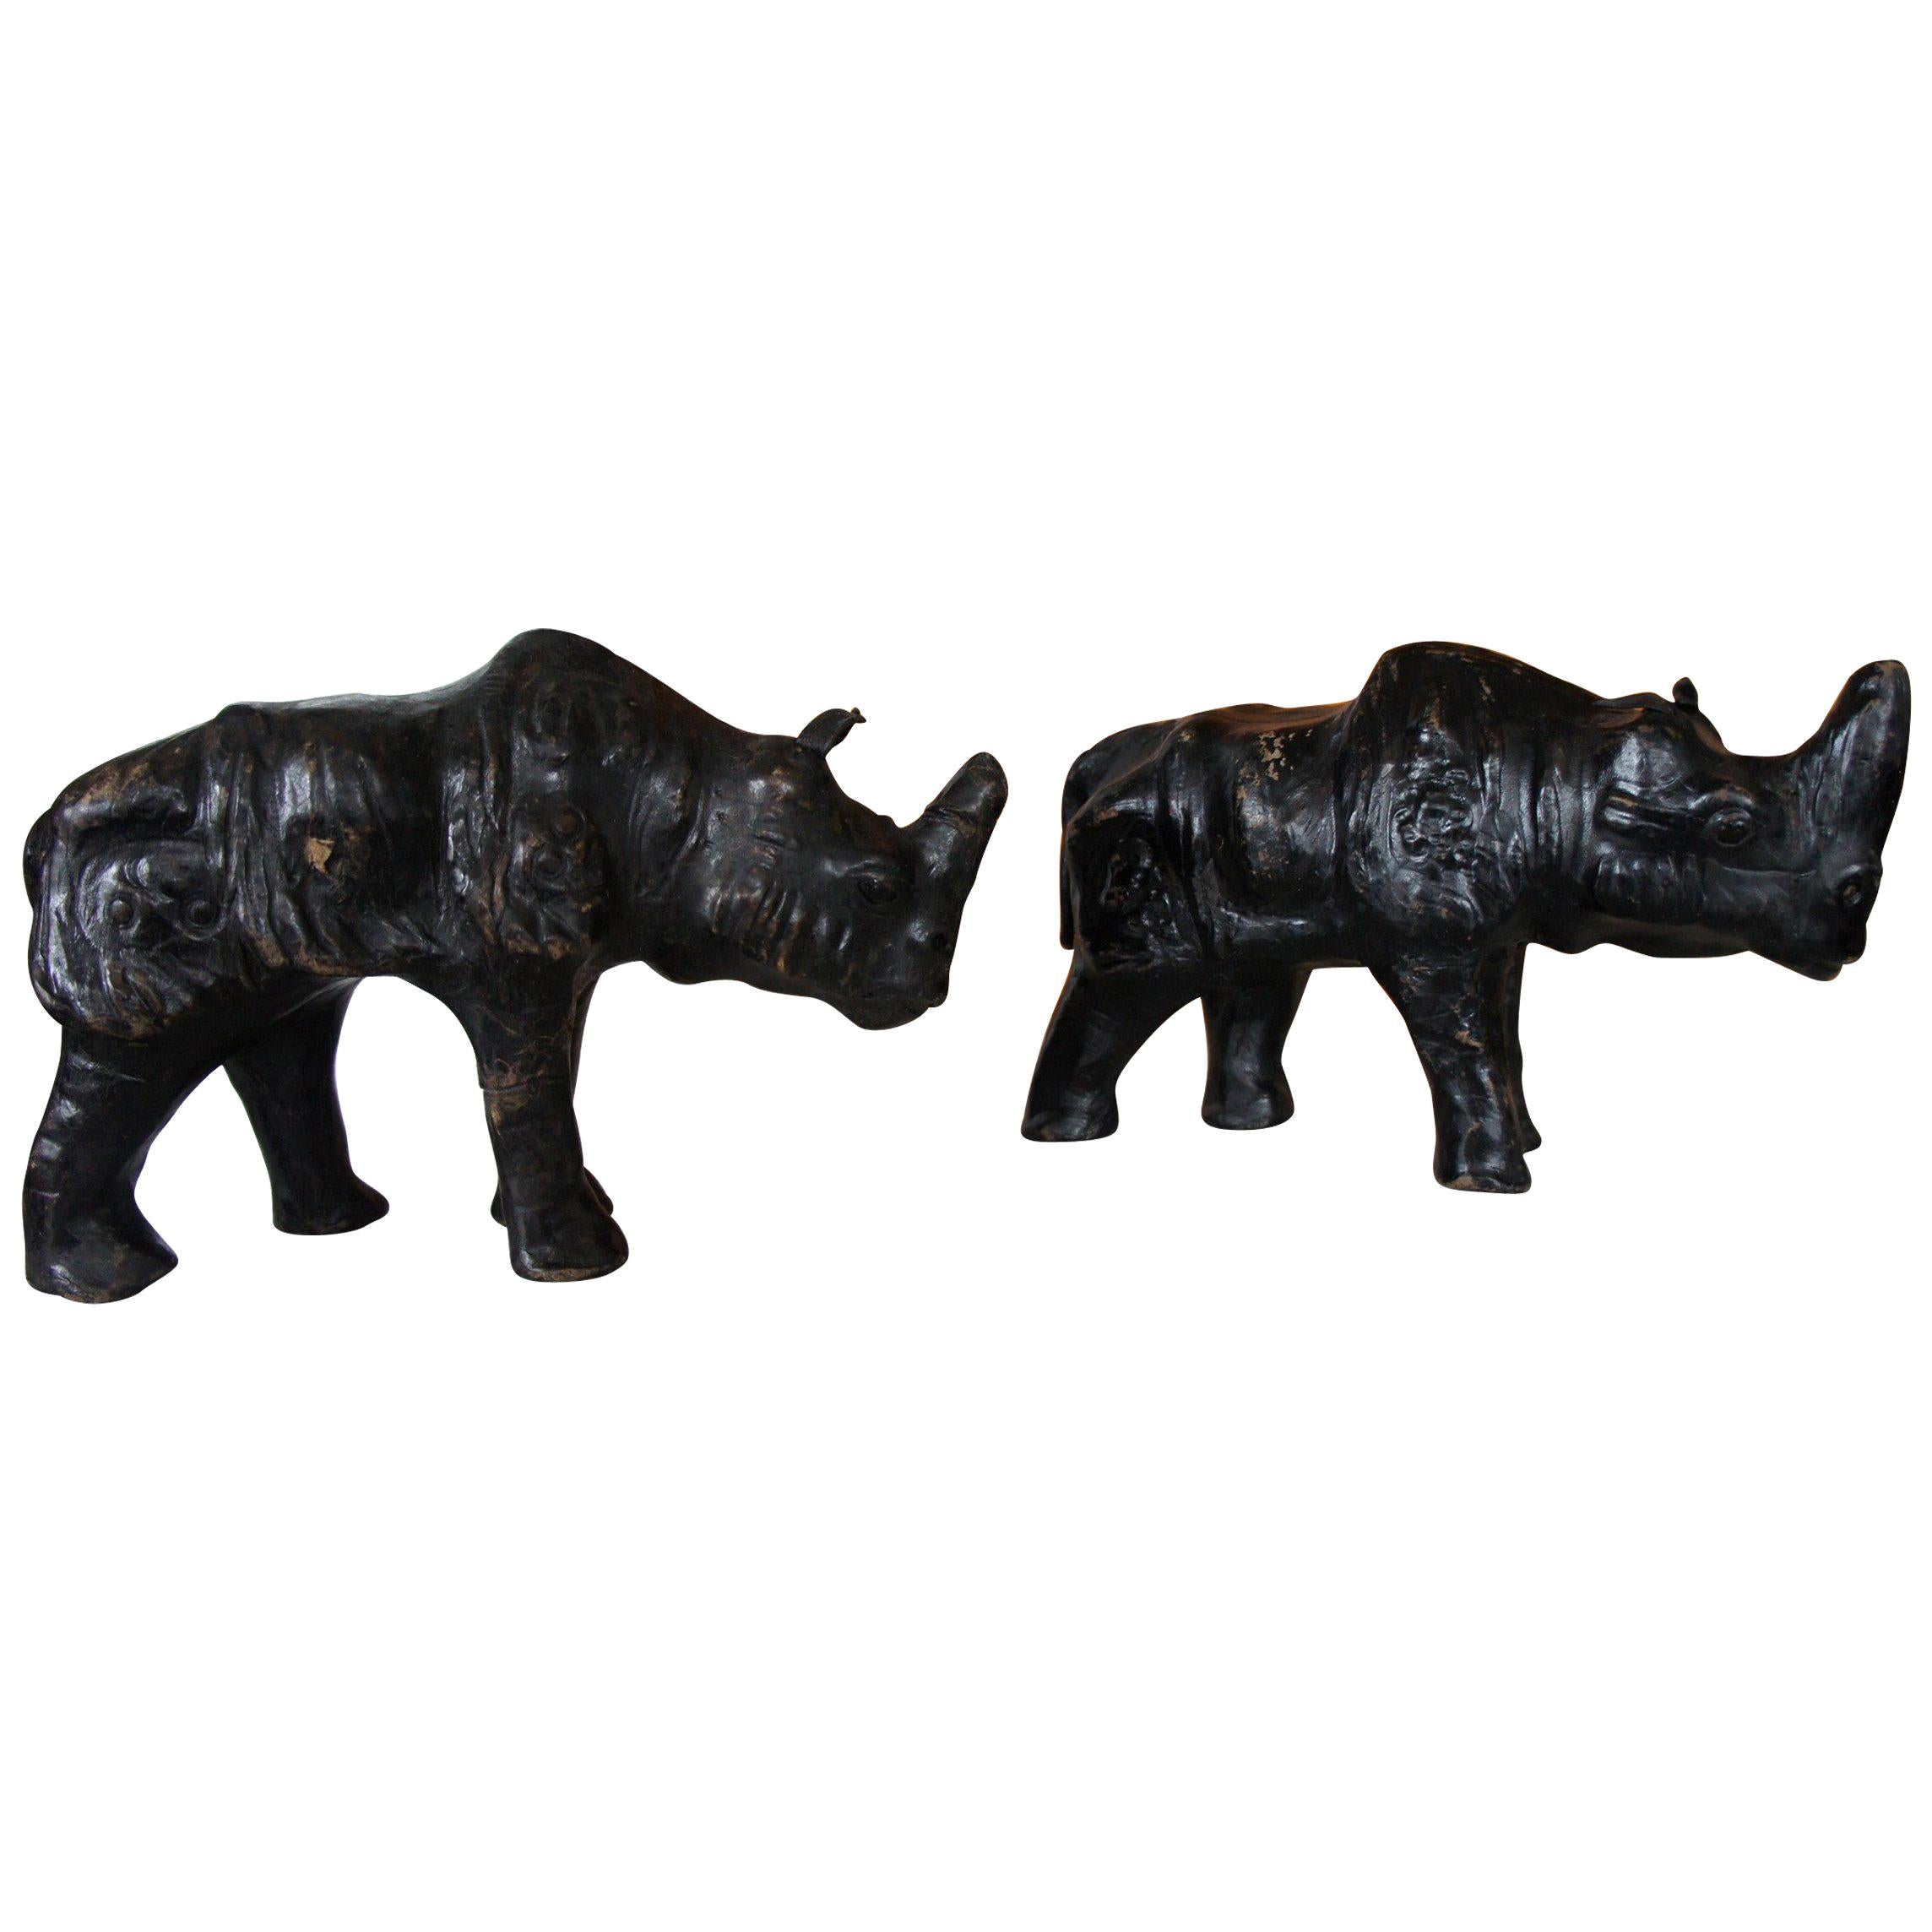 Seltenes und kleines Paar schwarzer Rhino-Skulpturen aus Leder auf Holz mit Glasaugen